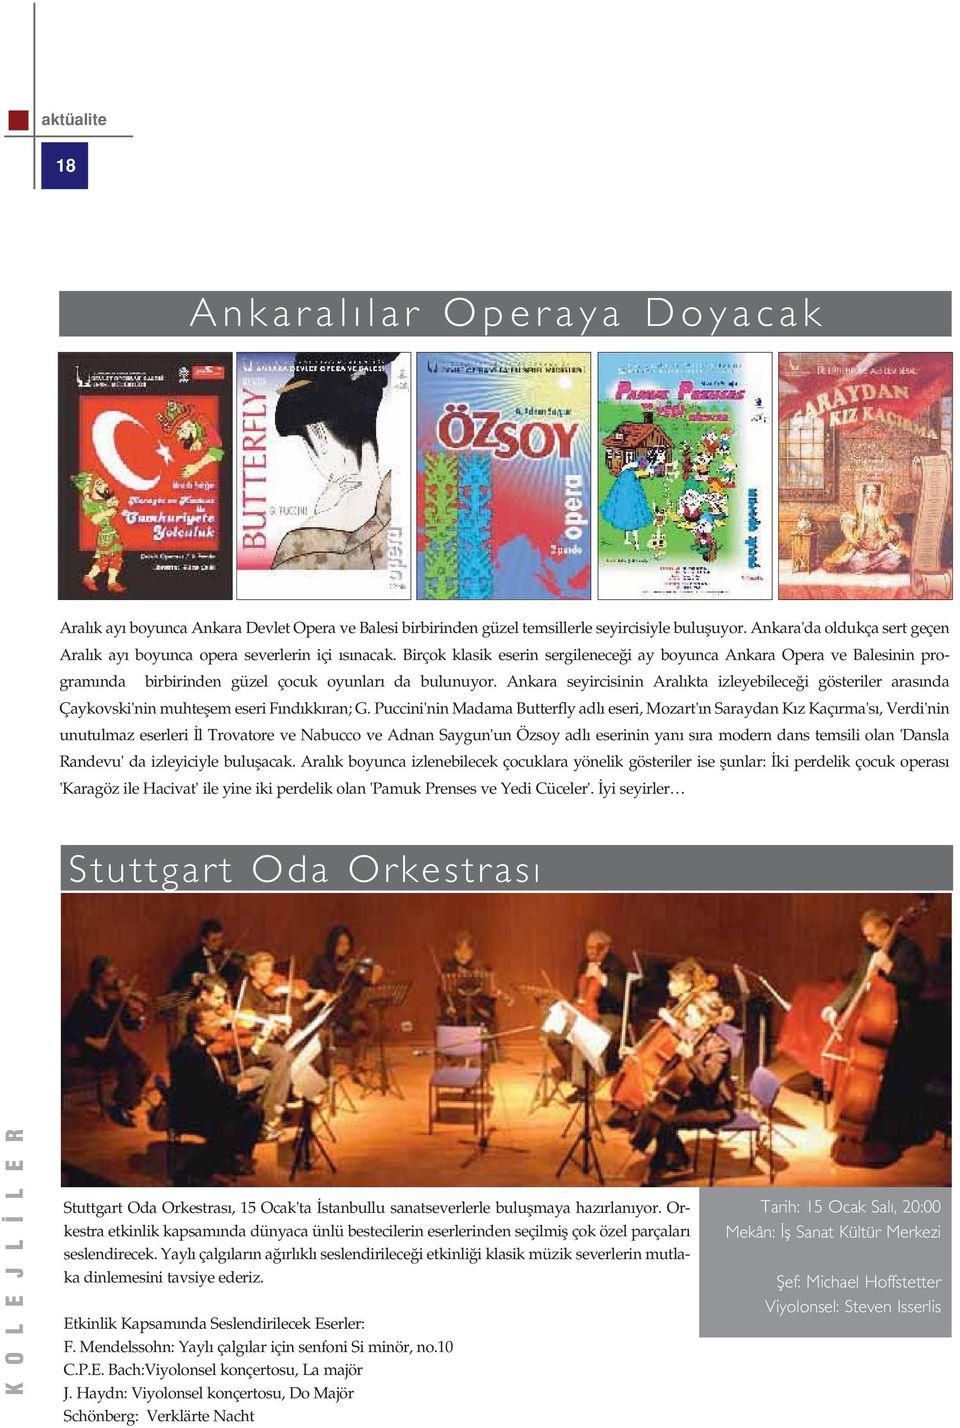 Birçok klasik eserin sergilenece i ay boyunca Ankara Opera ve Balesinin program nda birbirinden güzel çocuk oyunlar da bulunuyor.